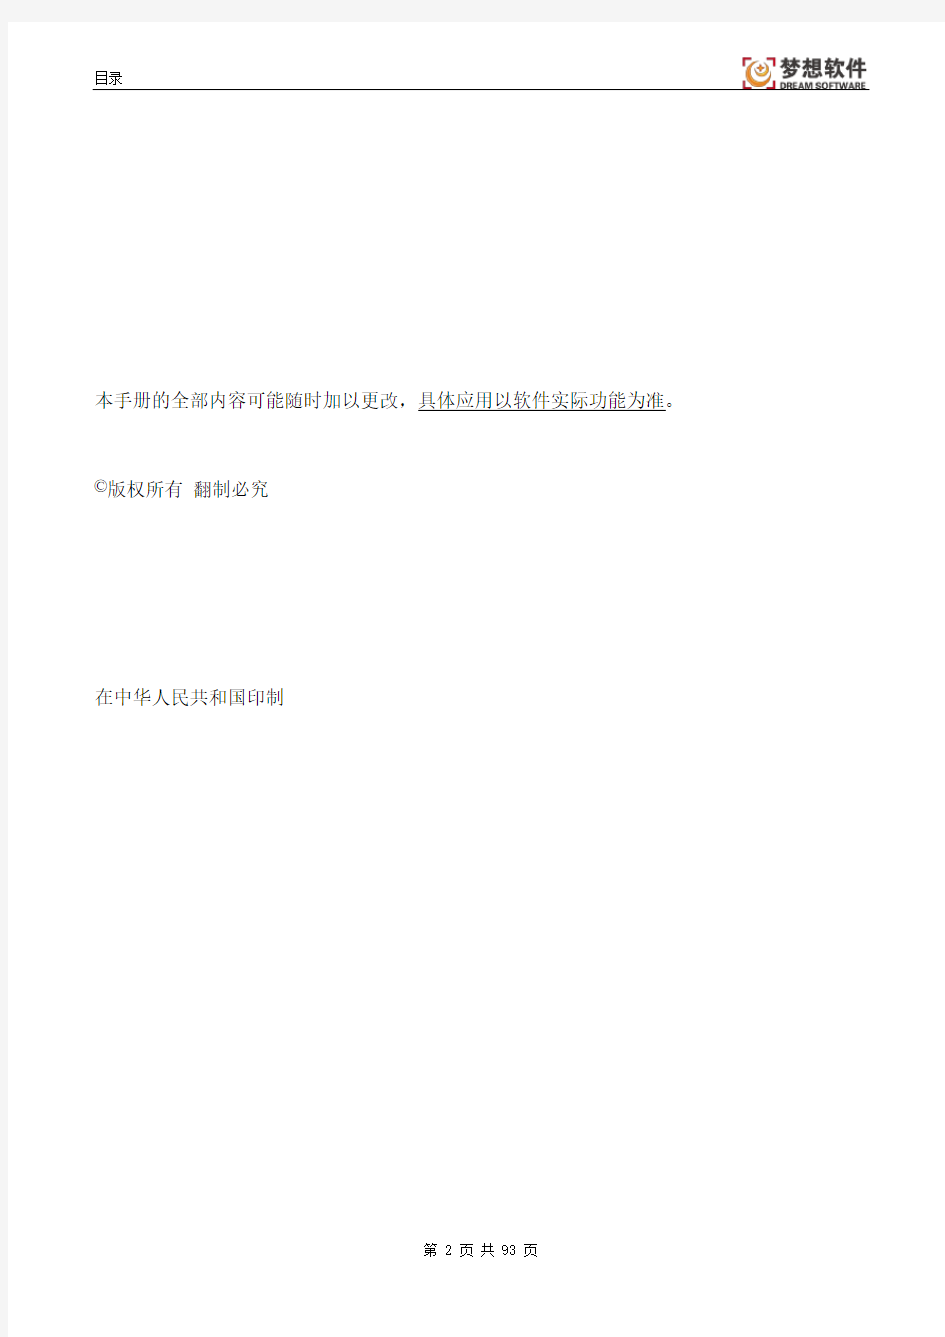 江西省公务消费网络监管平台操作手册V6.8(三公监管版)